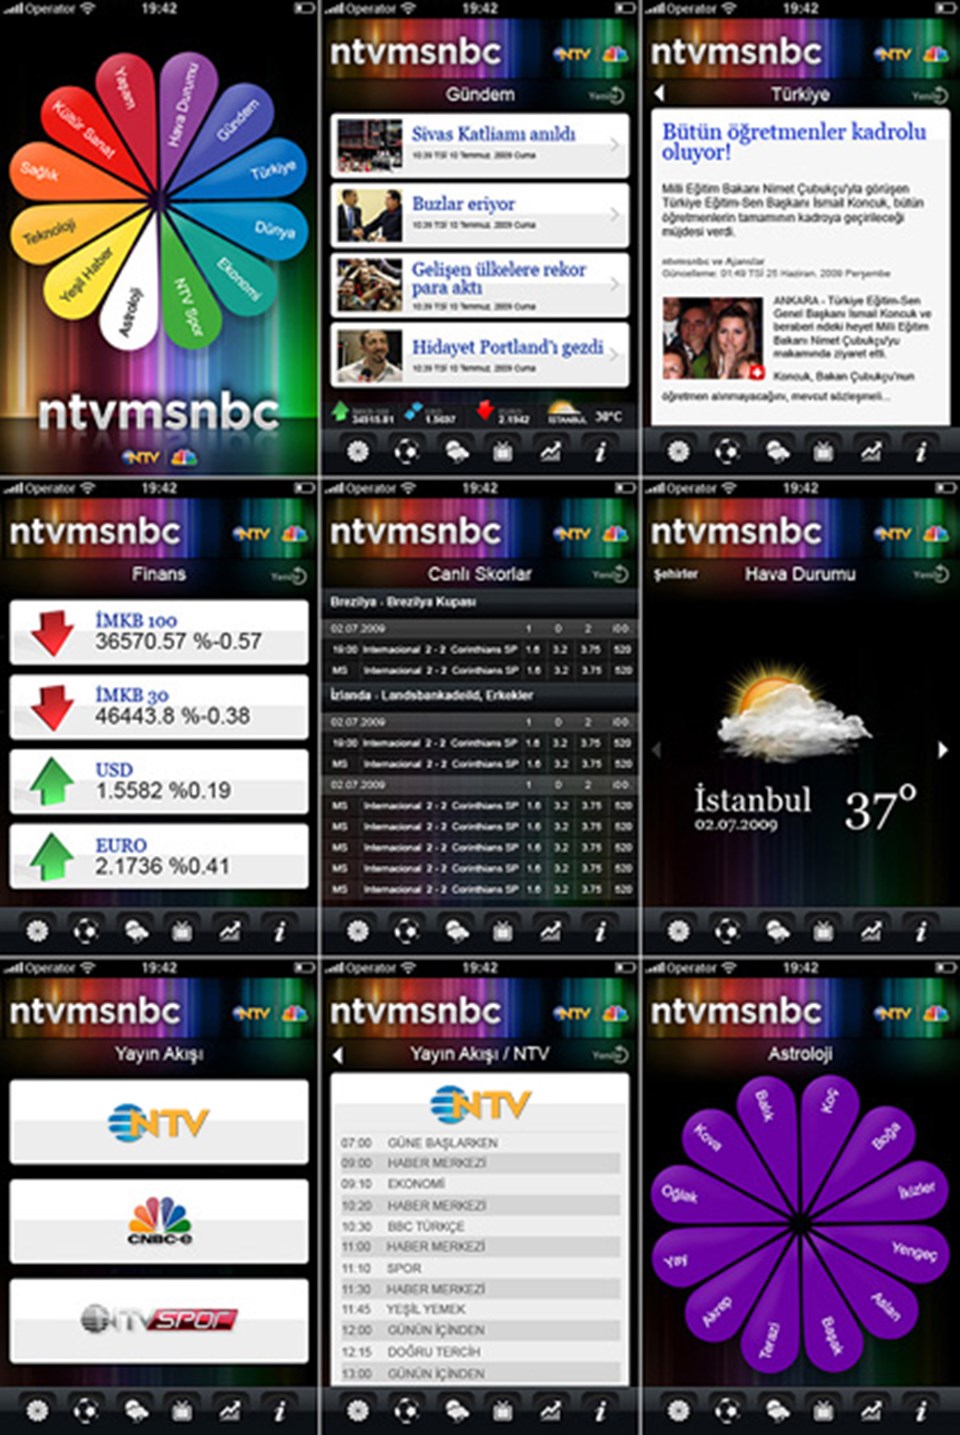 Ntvmsnbc uygulaması App Store'da 1 numara! - 1